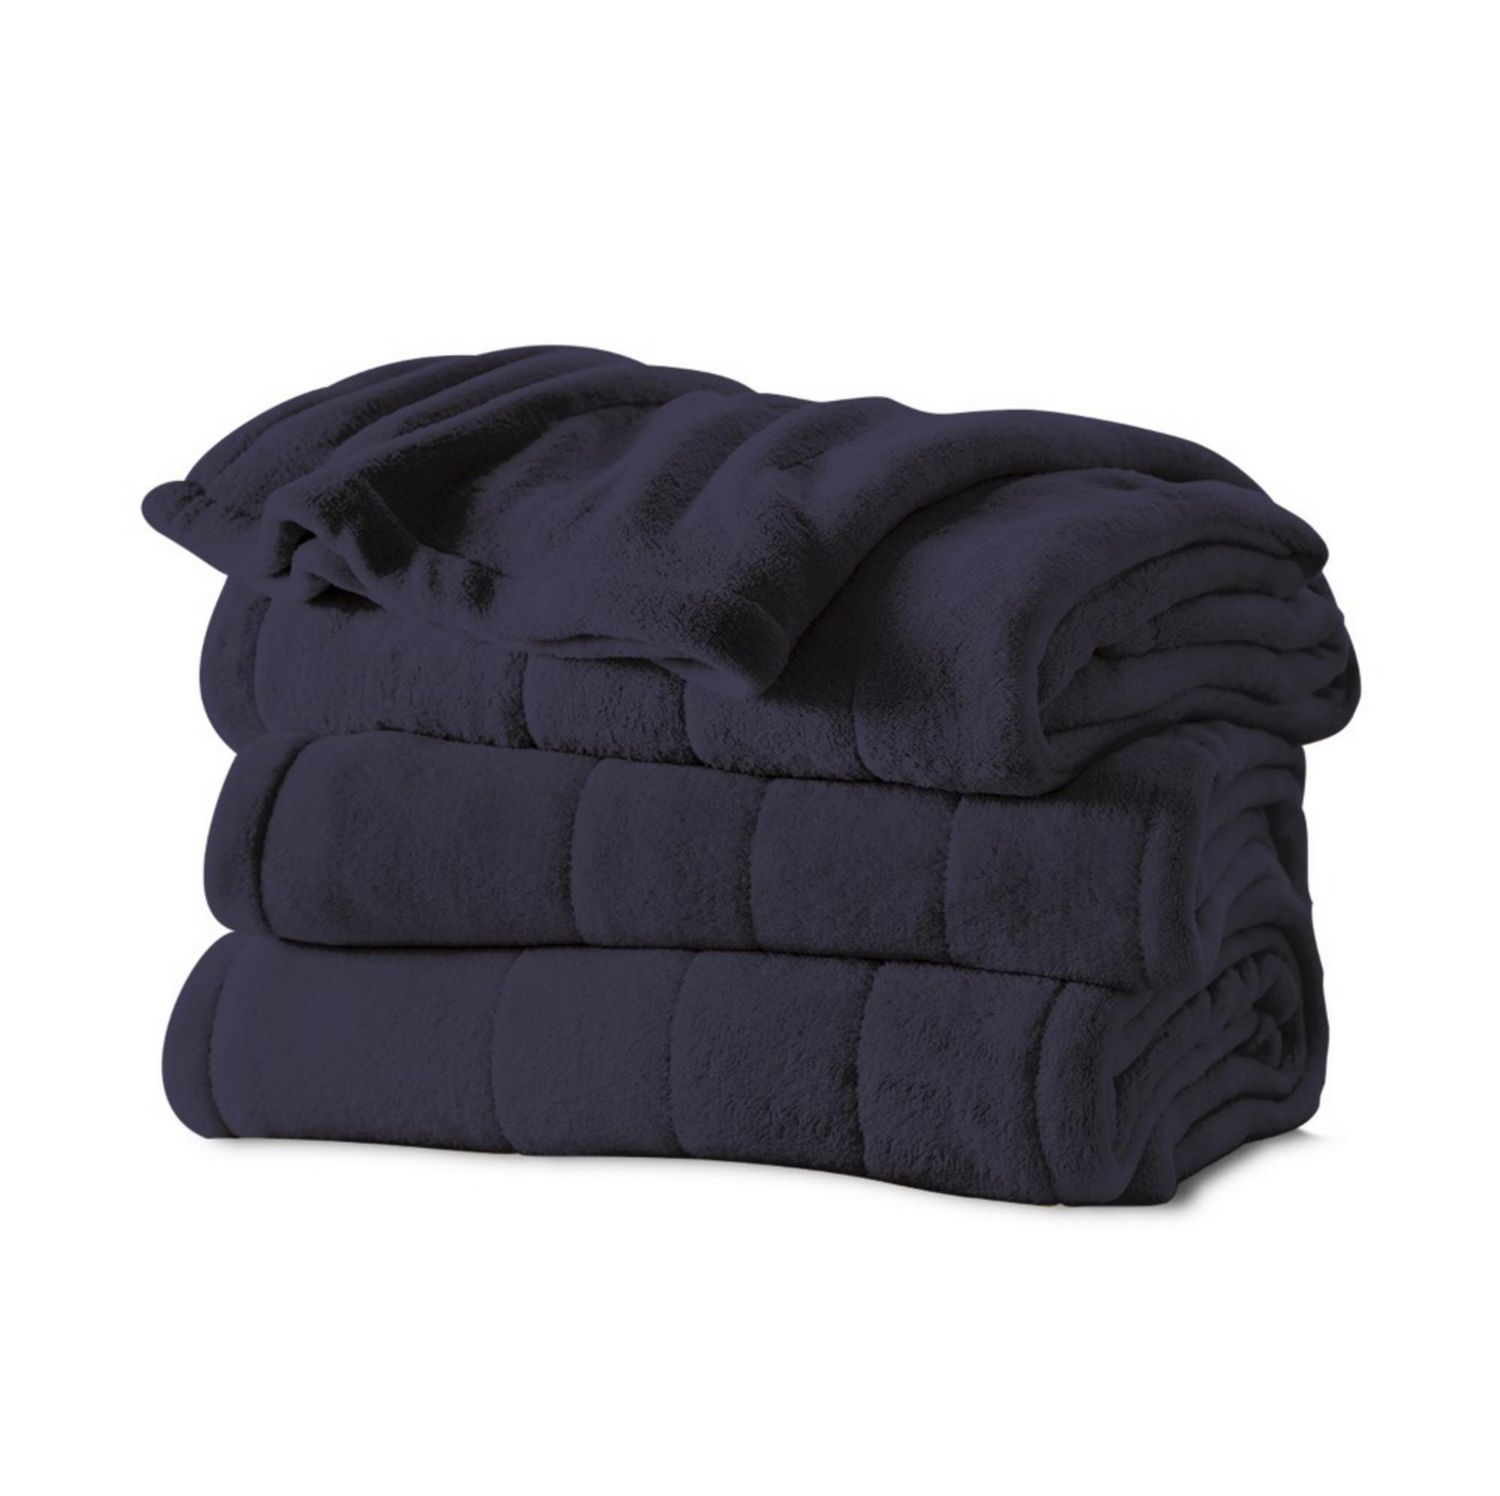 Sunbeam® Microplush King Sized Heated Blanket, Blue